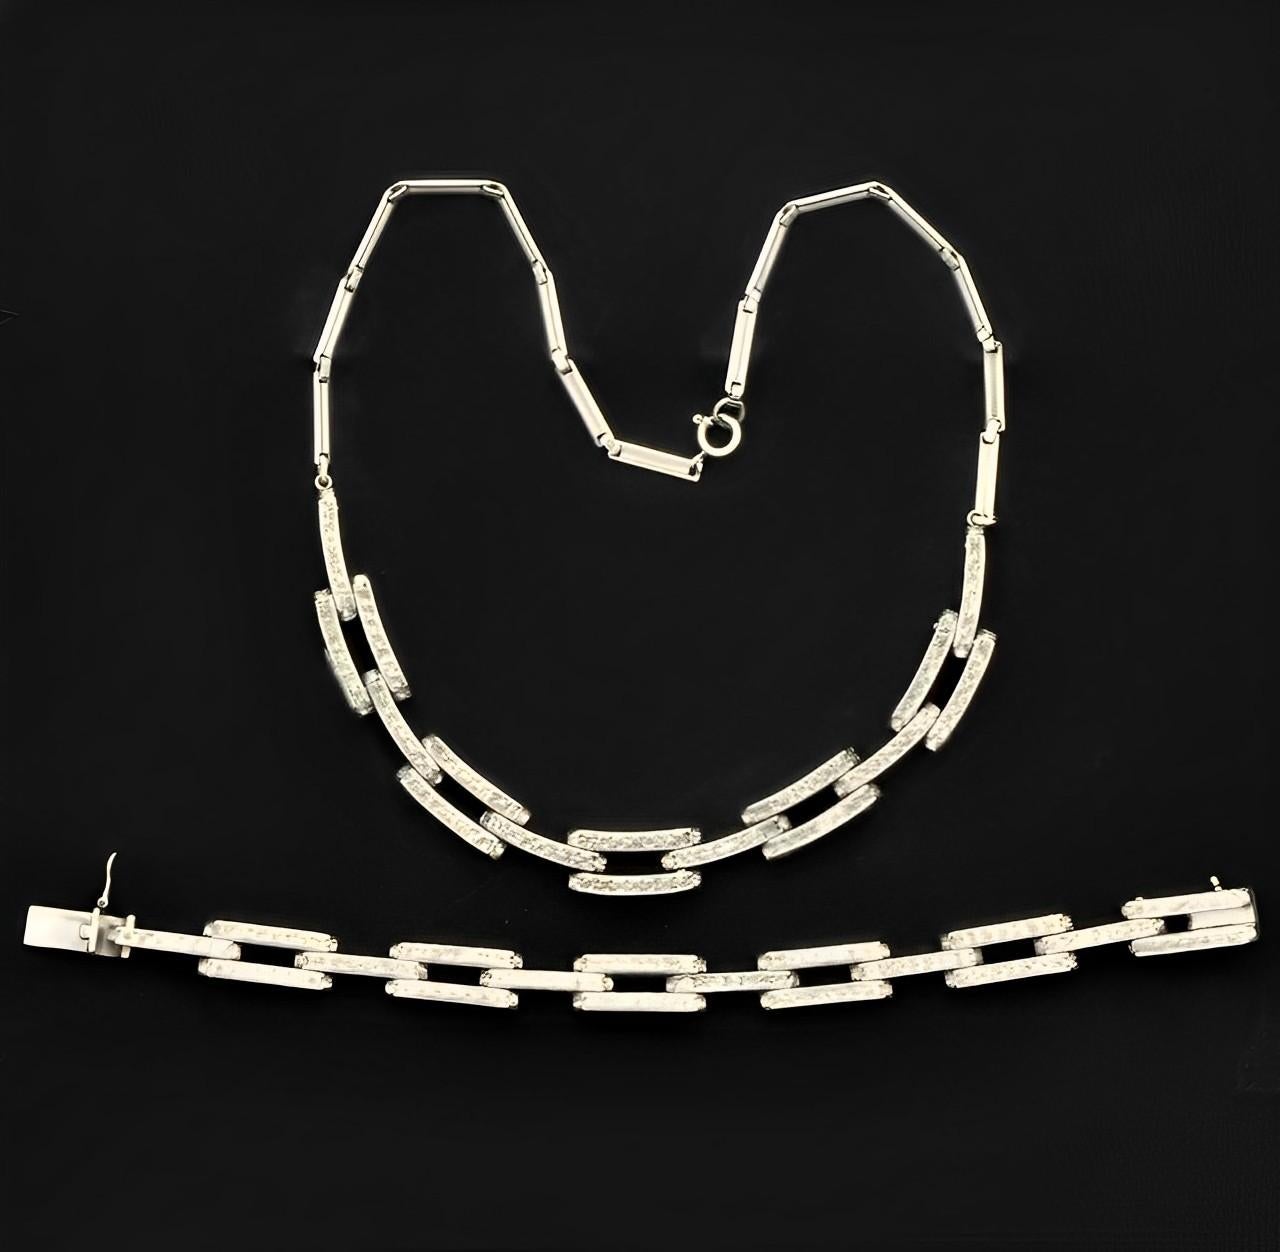 Schreiber & Hiller Art Deco DRGM Silver Tone Rhinestone Link Necklace Bracelet For Sale 5